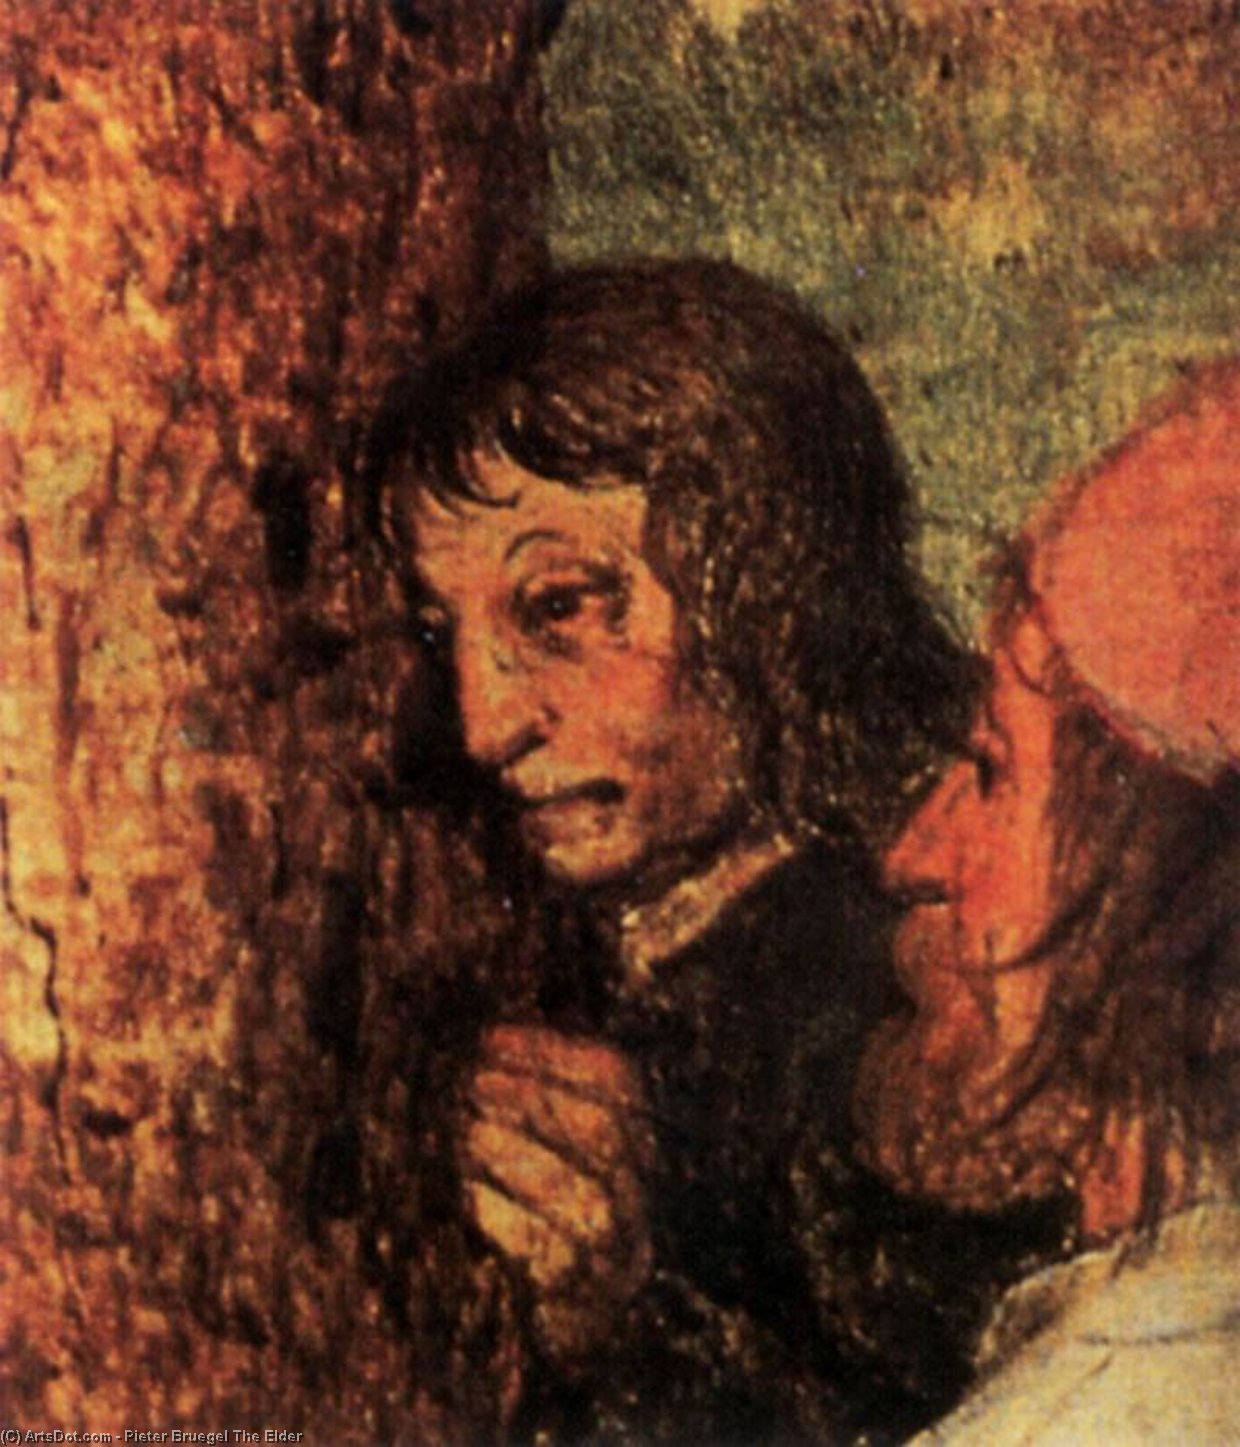 WikiOO.org - אנציקלופדיה לאמנויות יפות - ציור, יצירות אמנות Pieter Bruegel The Elder - Christ Carrying the Cross (detail)